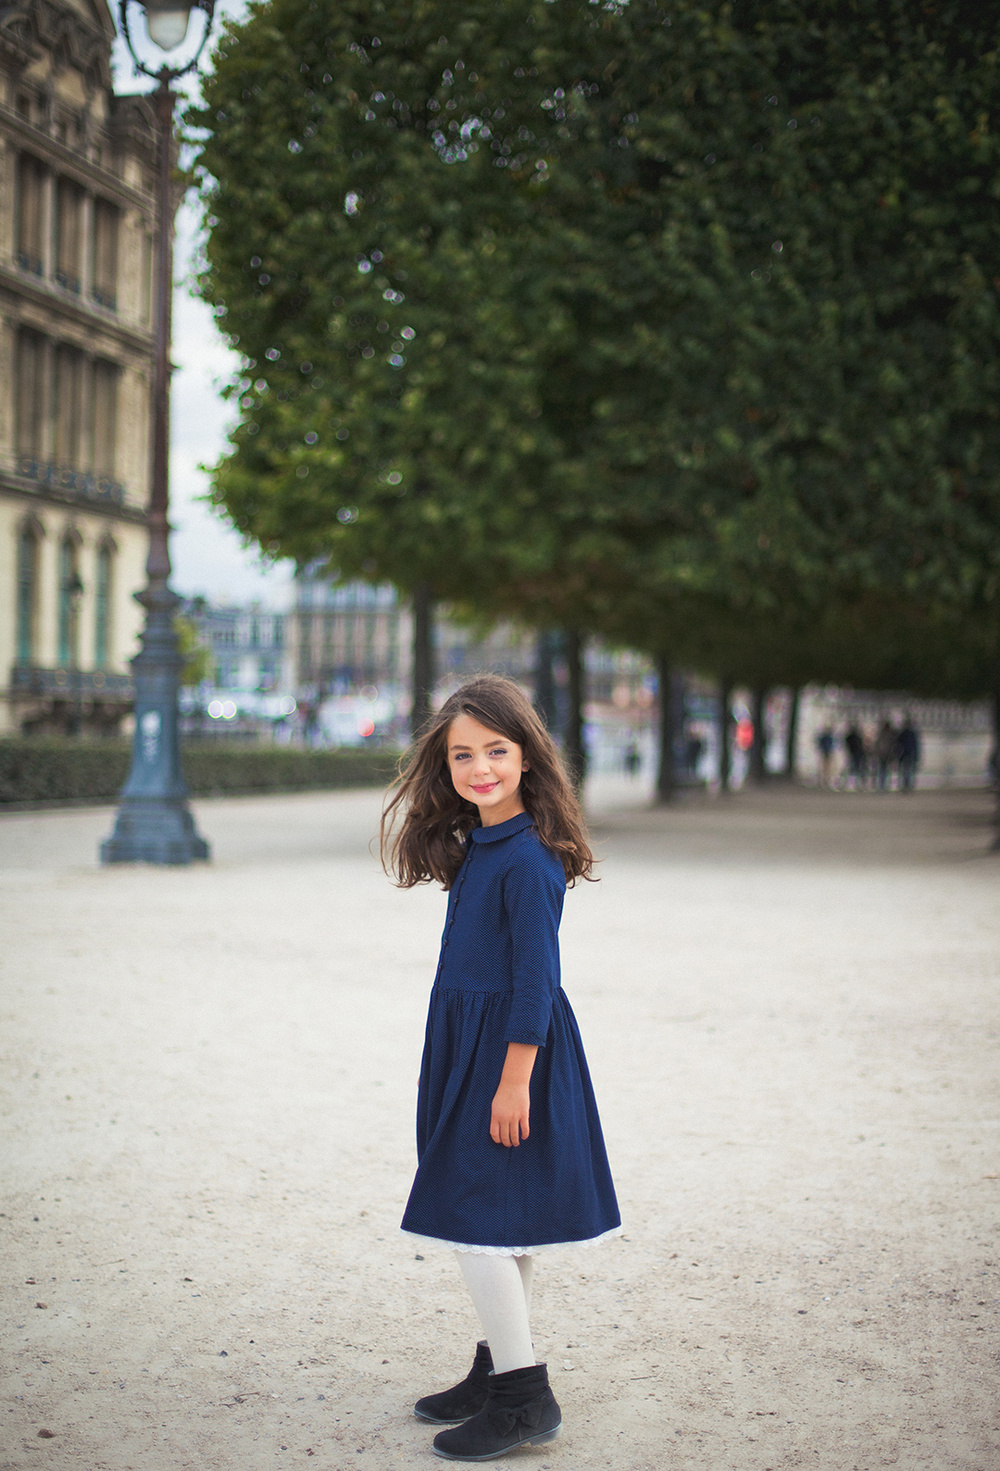 Каталог - Детская одежда Petite Princesse